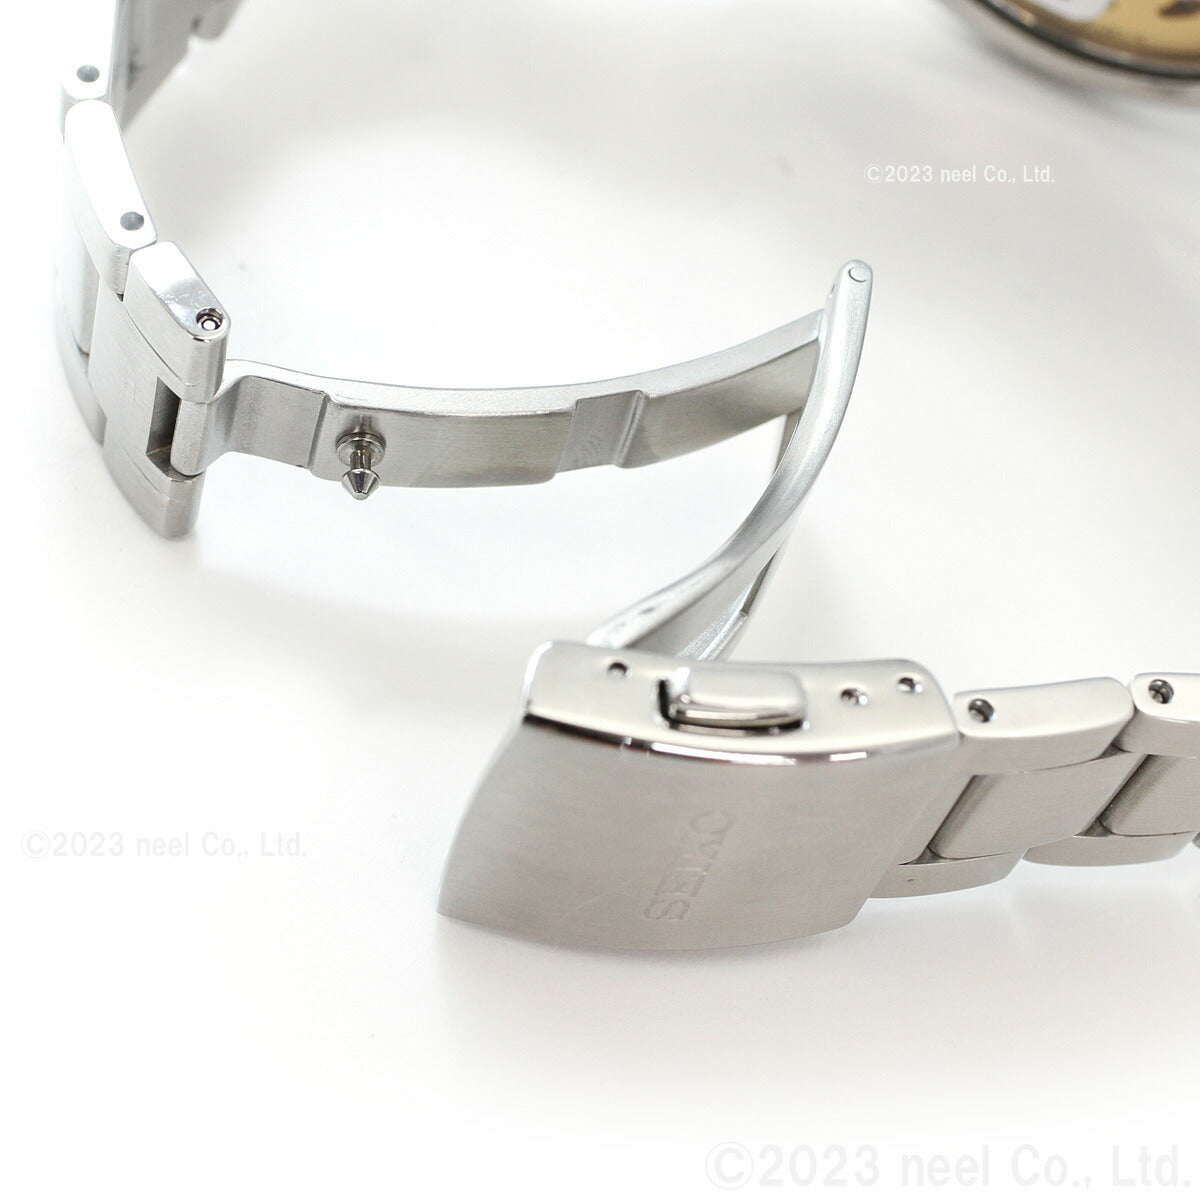 セイコー プレザージュ SEIKO PRESAGE 自動巻き メカニカル 腕時計 メンズ ベーシックライン 3針カレンダーモデル SARY193